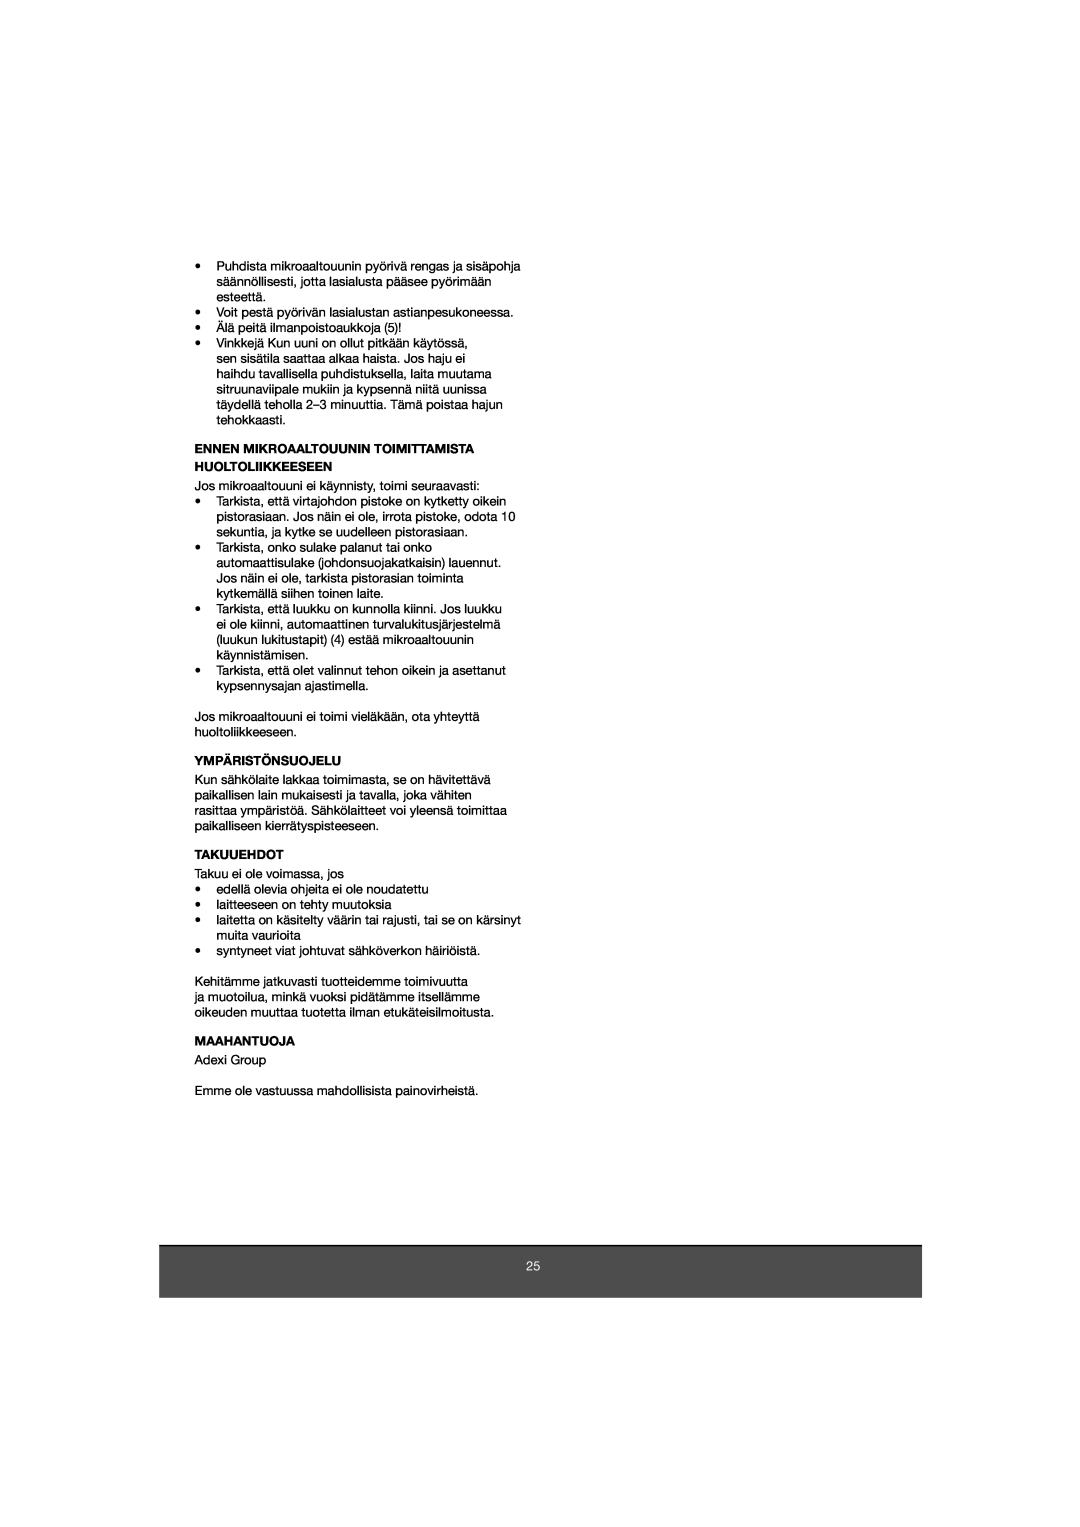 Melissa 653-081 manual Ennen Mikroaaltouunin Toimittamista Huoltoliikkeeseen, Ympäristönsuojelu, Takuuehdot, Maahantuoja 